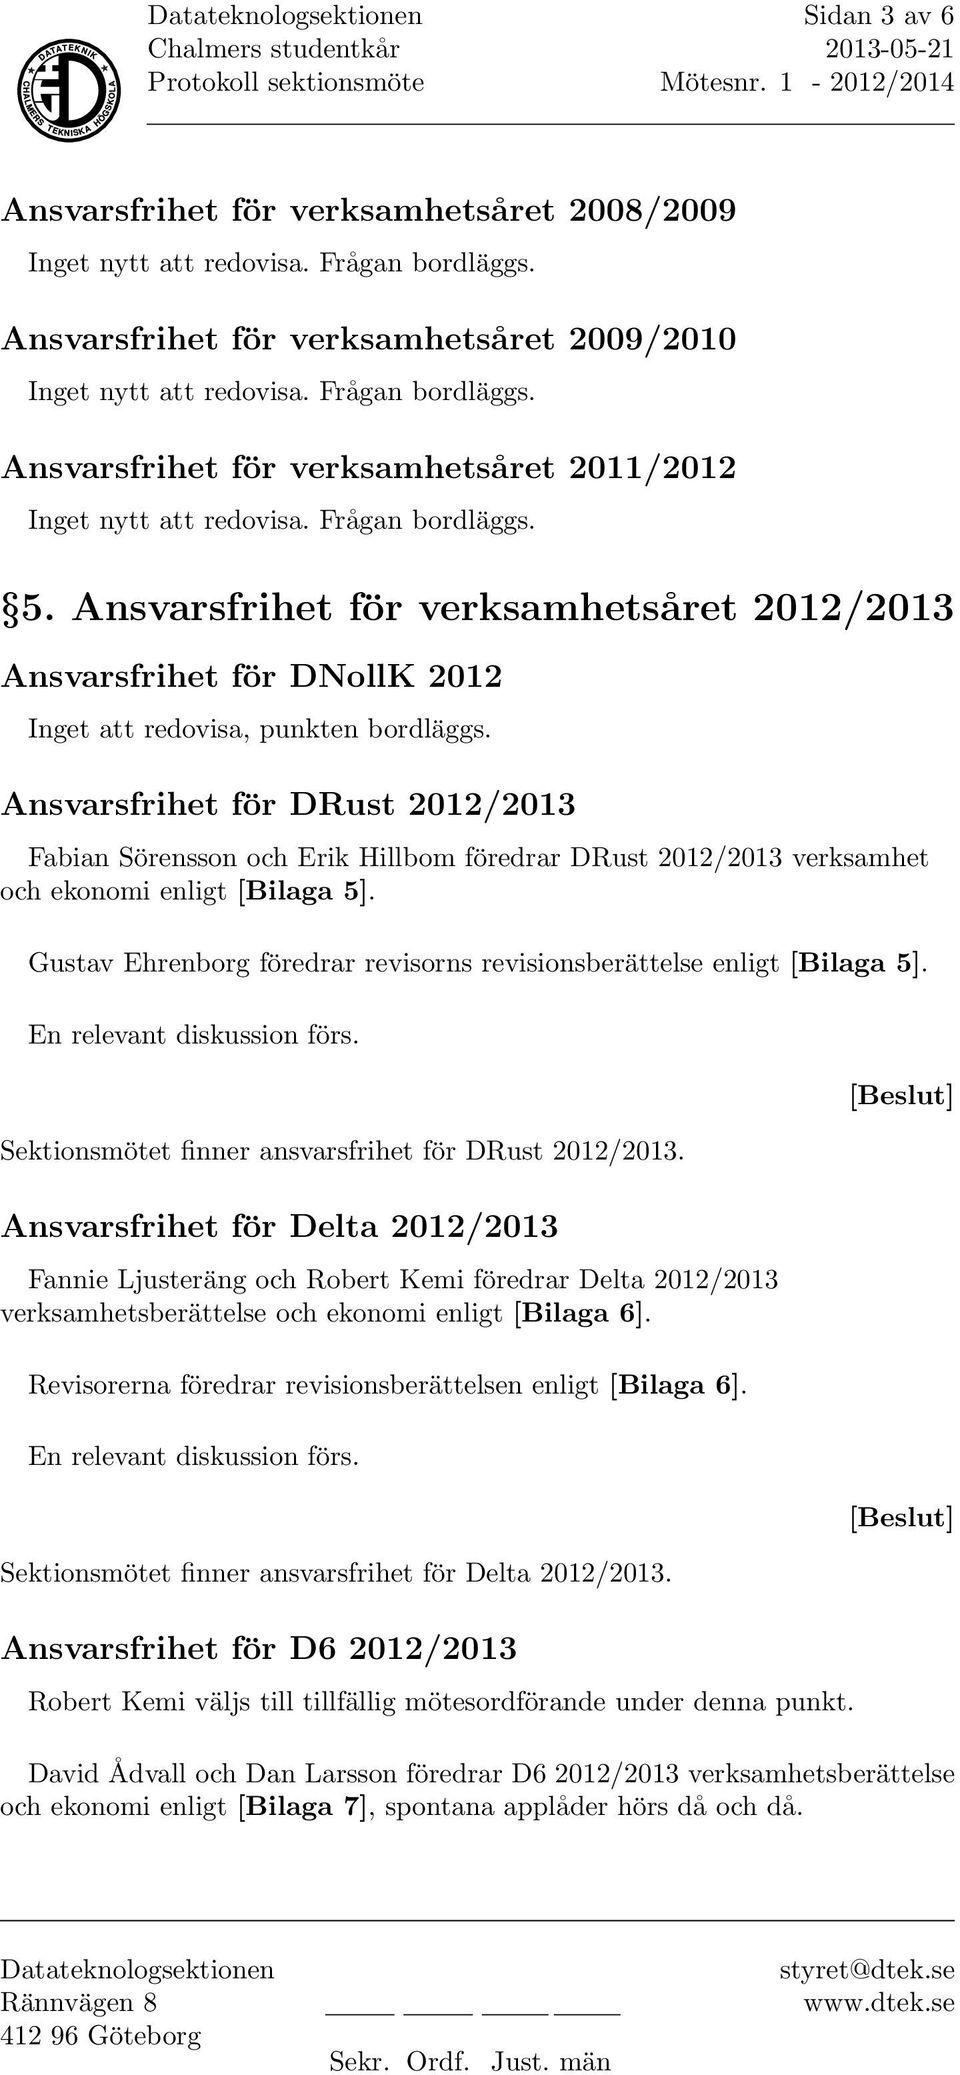 Ansvarsfrihet för DRust 2012/2013 Fabian Sörensson och Erik Hillbom föredrar DRust 2012/2013 verksamhet och ekonomi enligt [Bilaga 5].